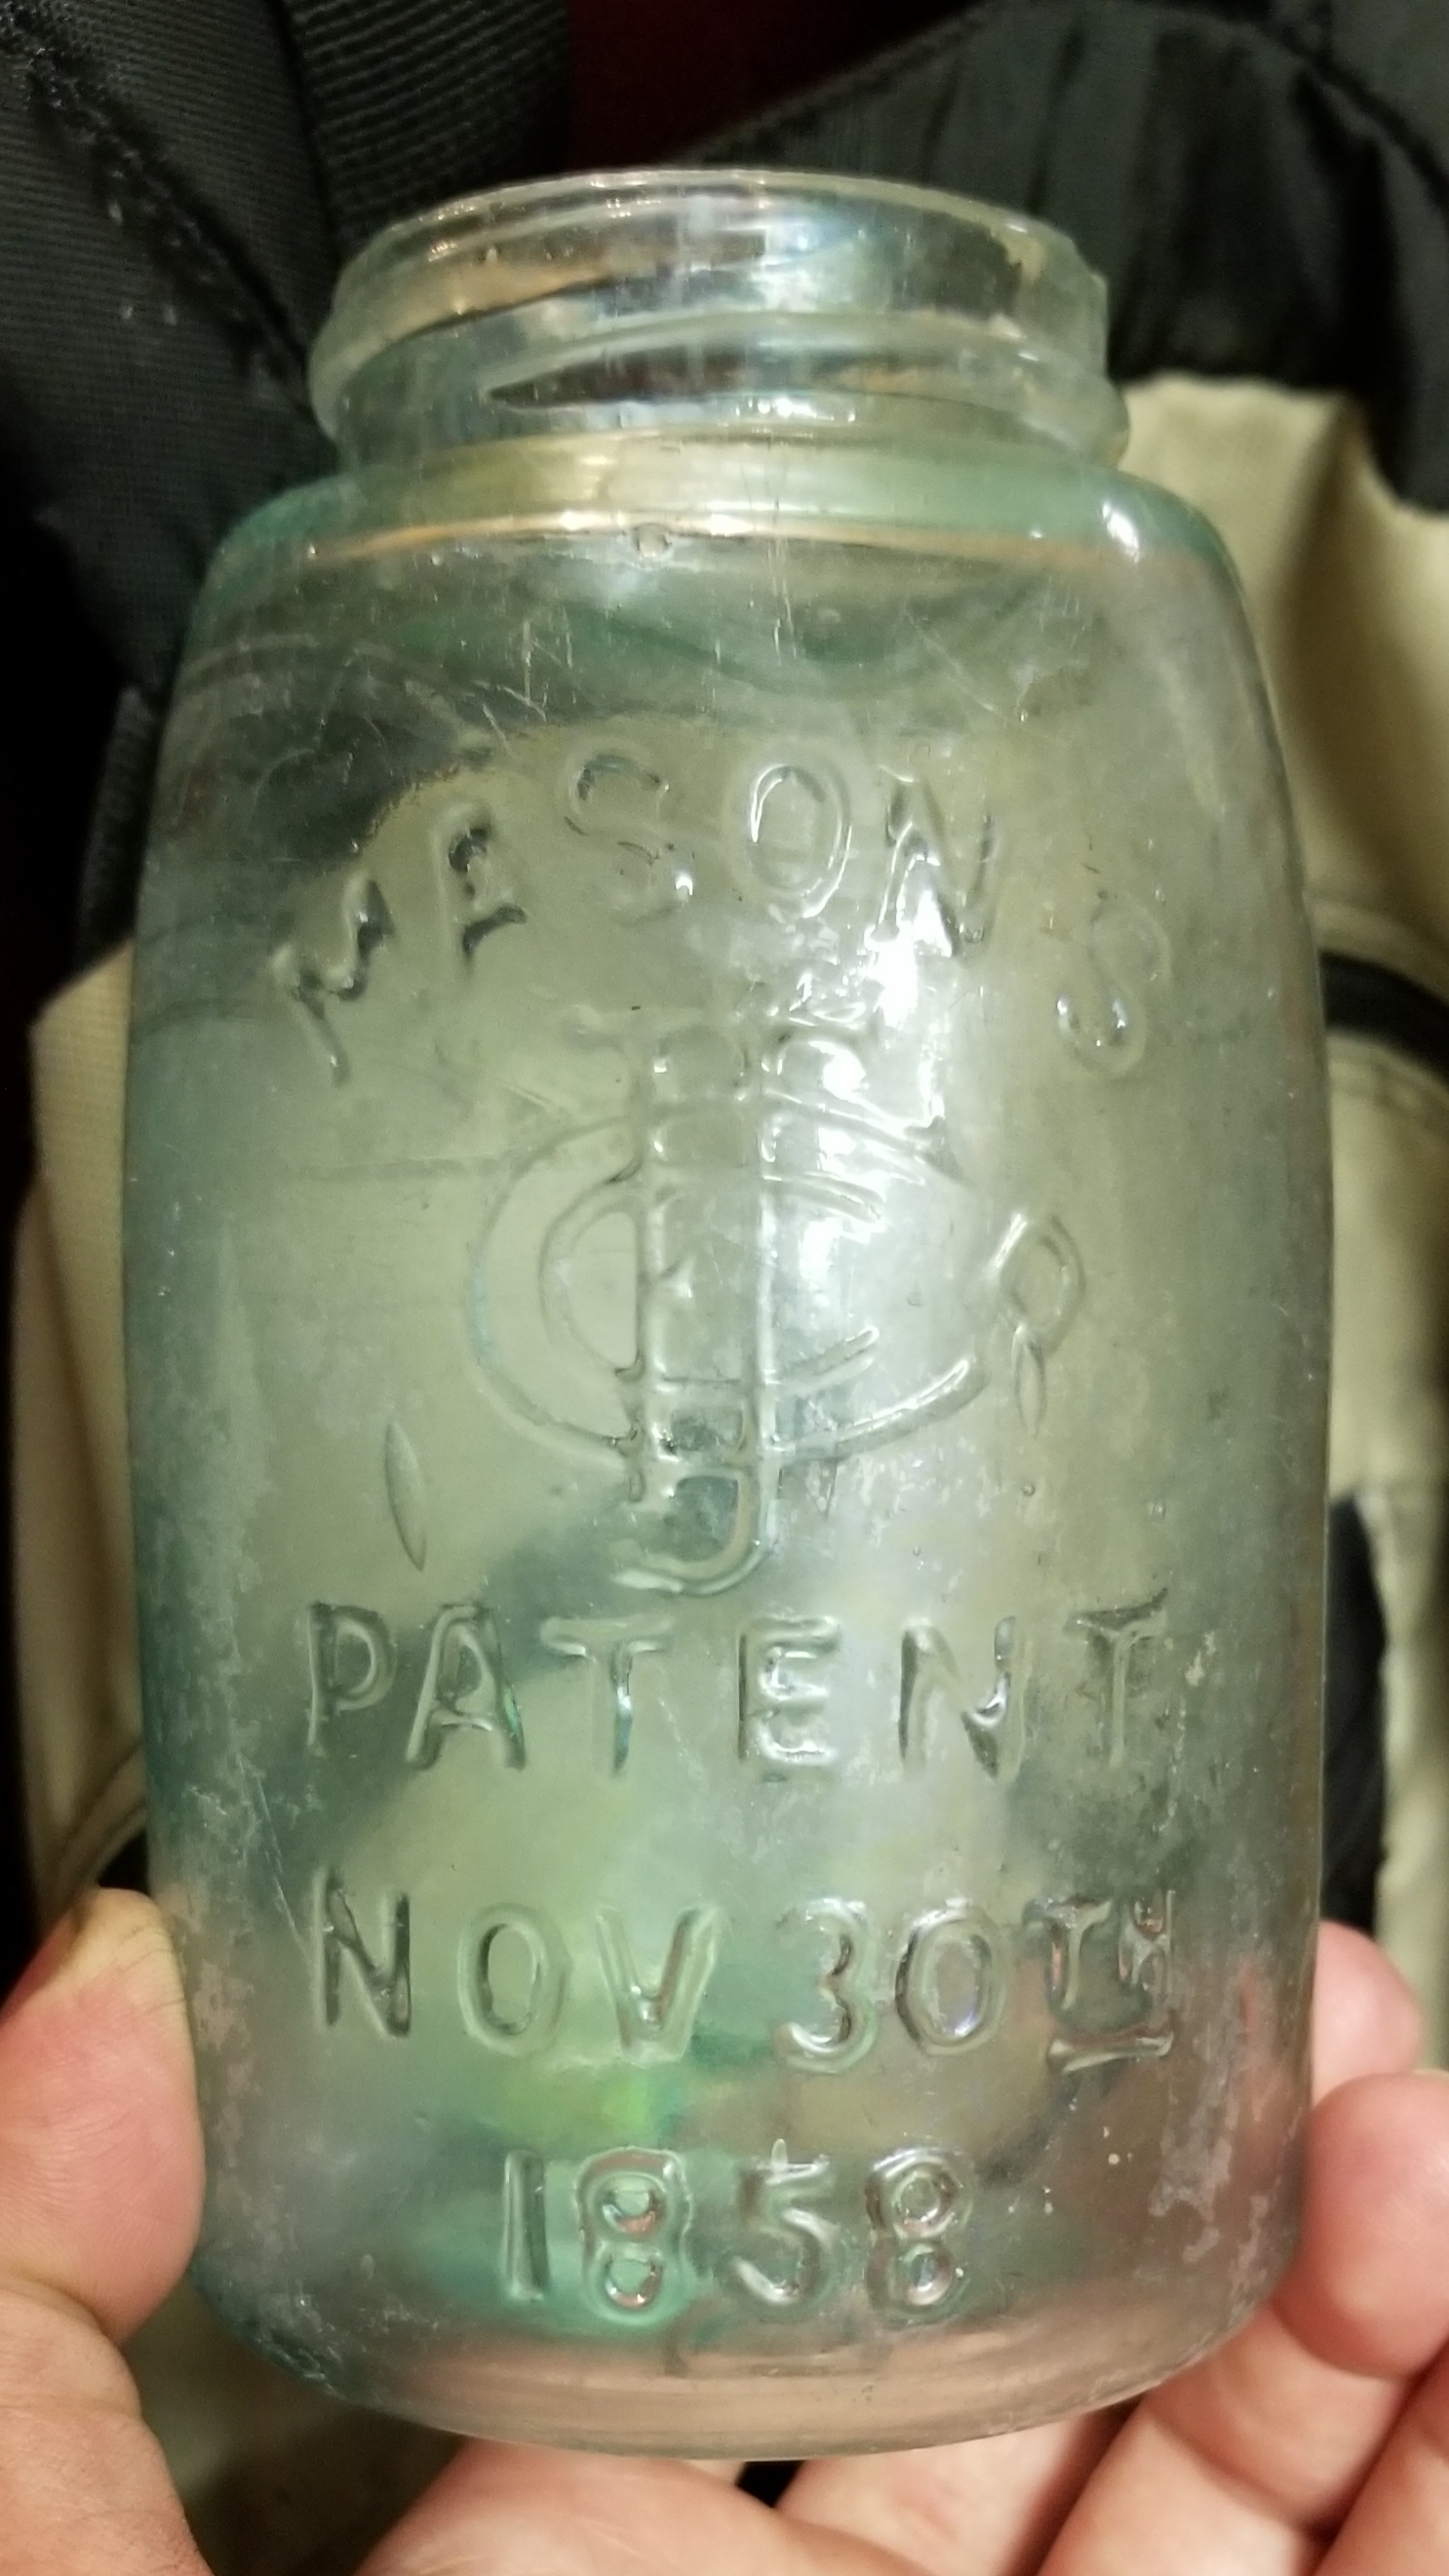 Pat. Nov. 30th 1858 Masons Jar